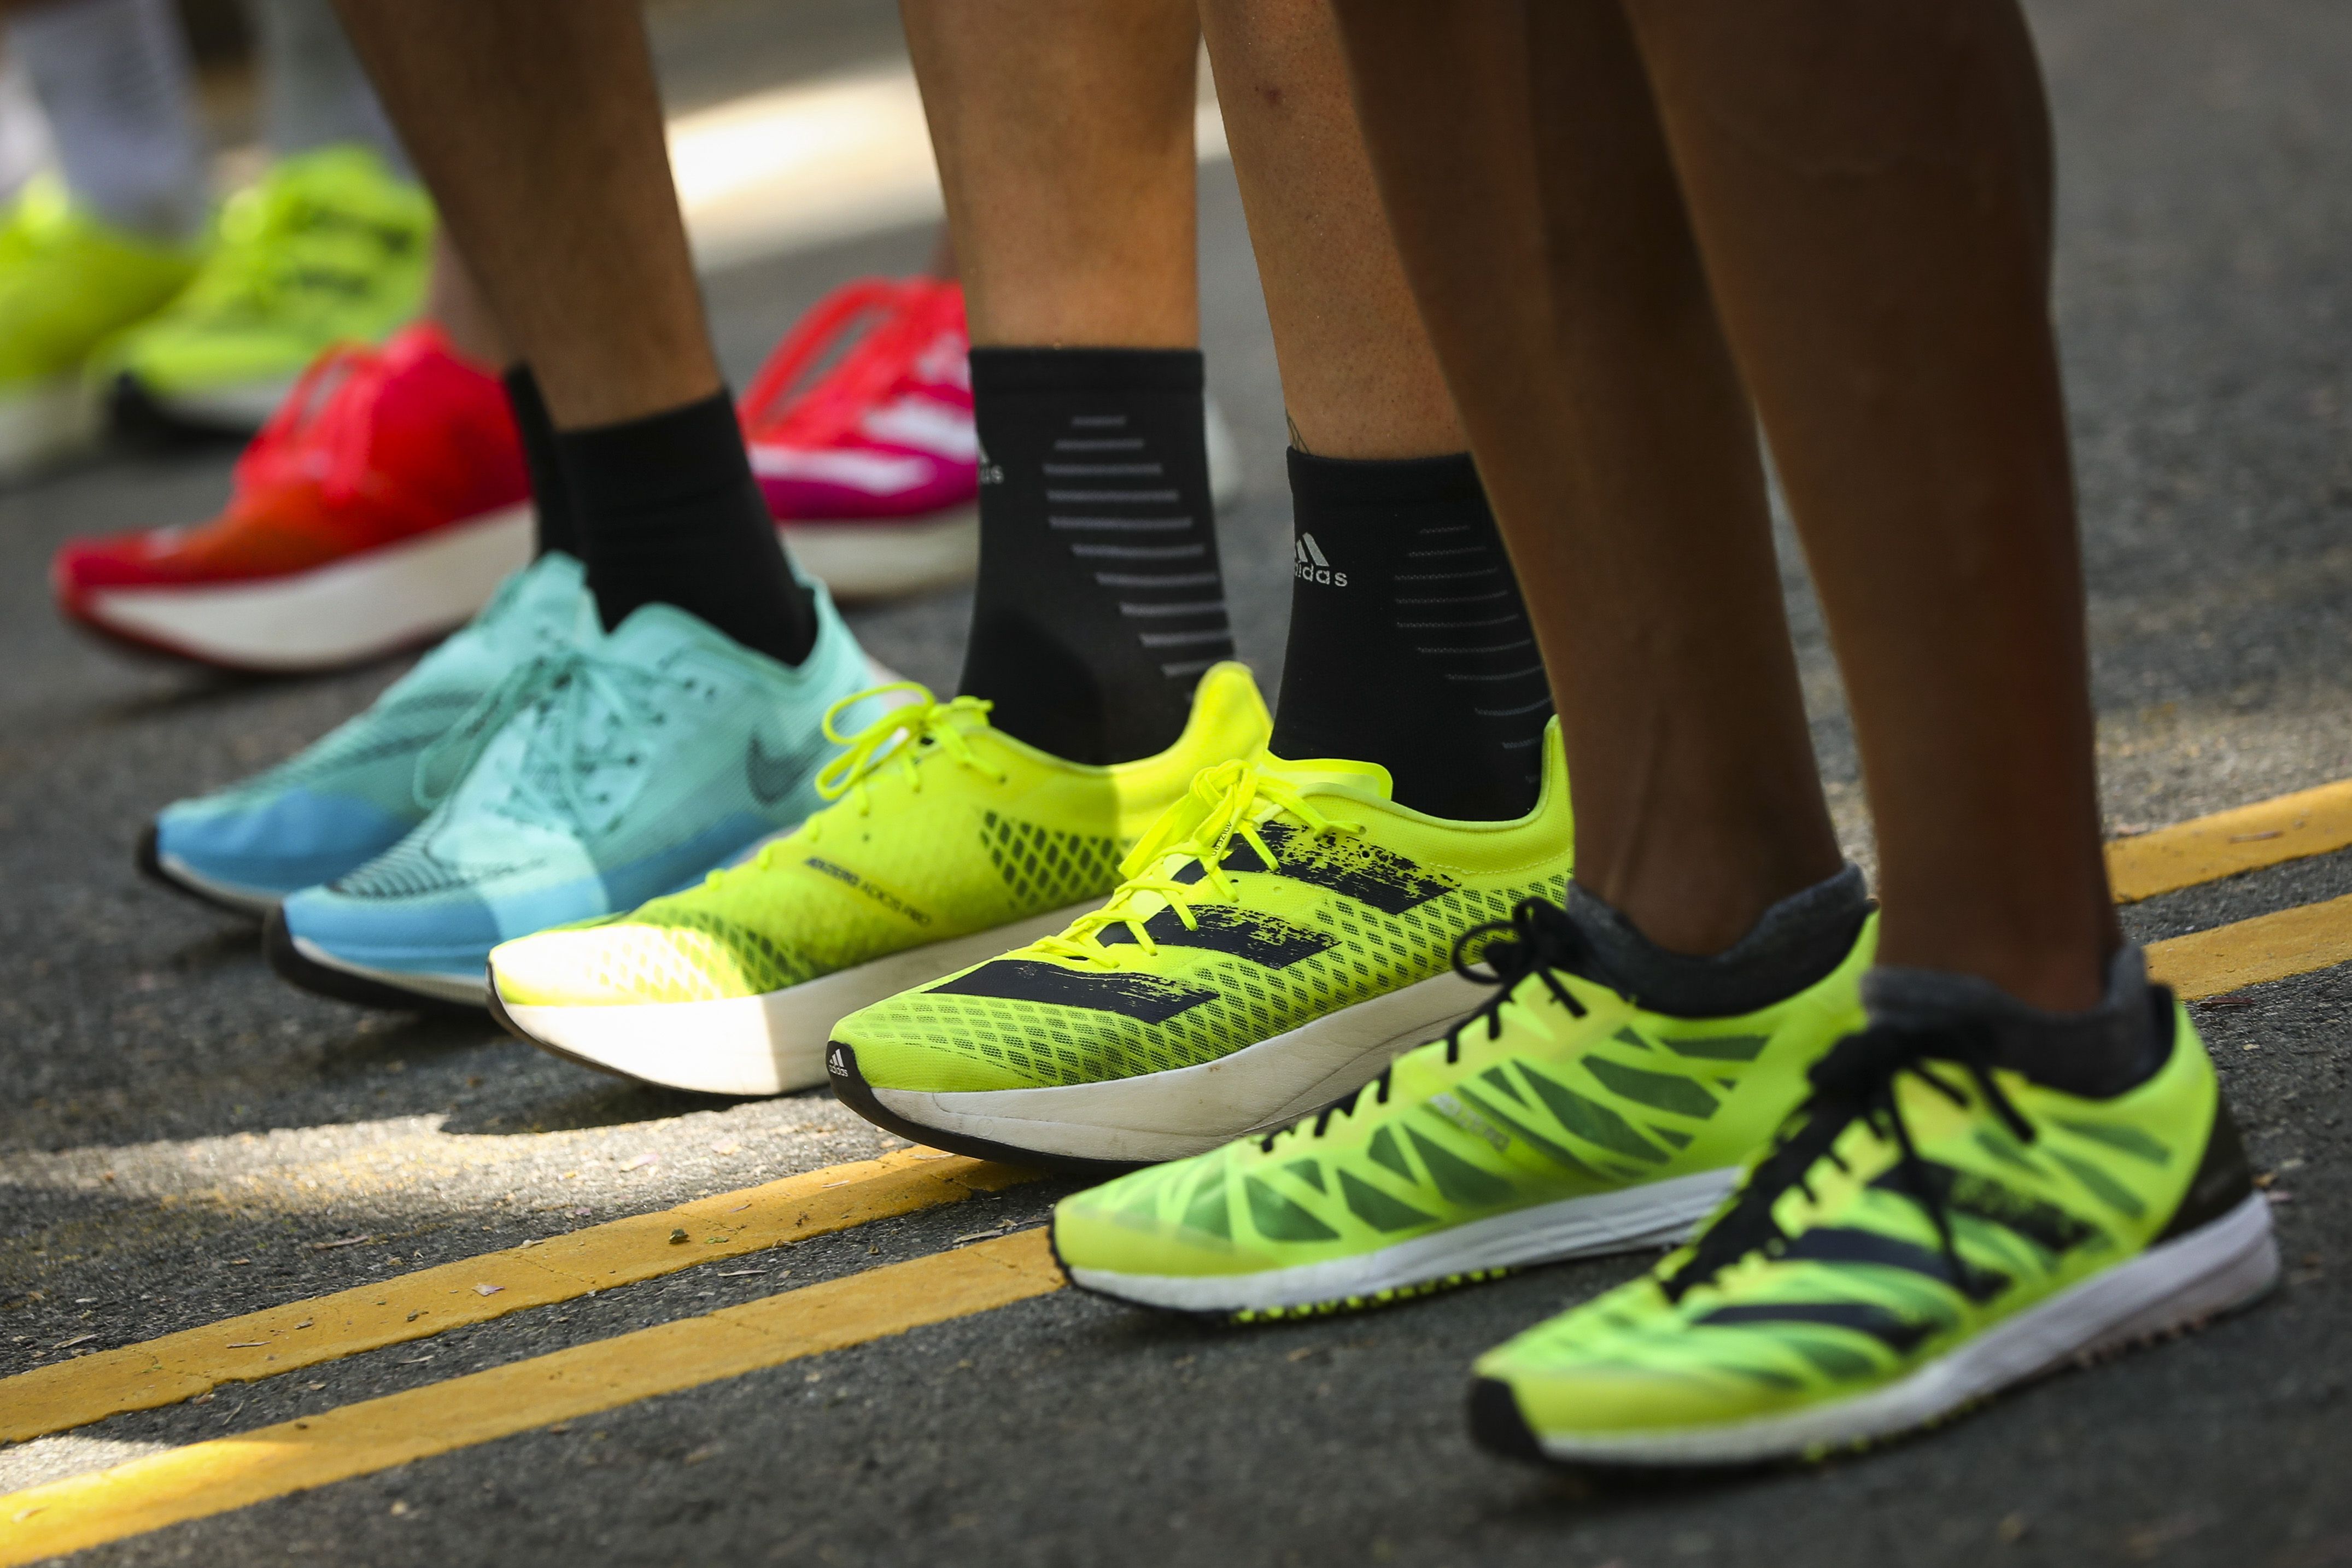 Air Zapatillas de Running para Hombre Mujer Zapatos para Correr y Asfalto Aire Libre y Deportes Calzado 